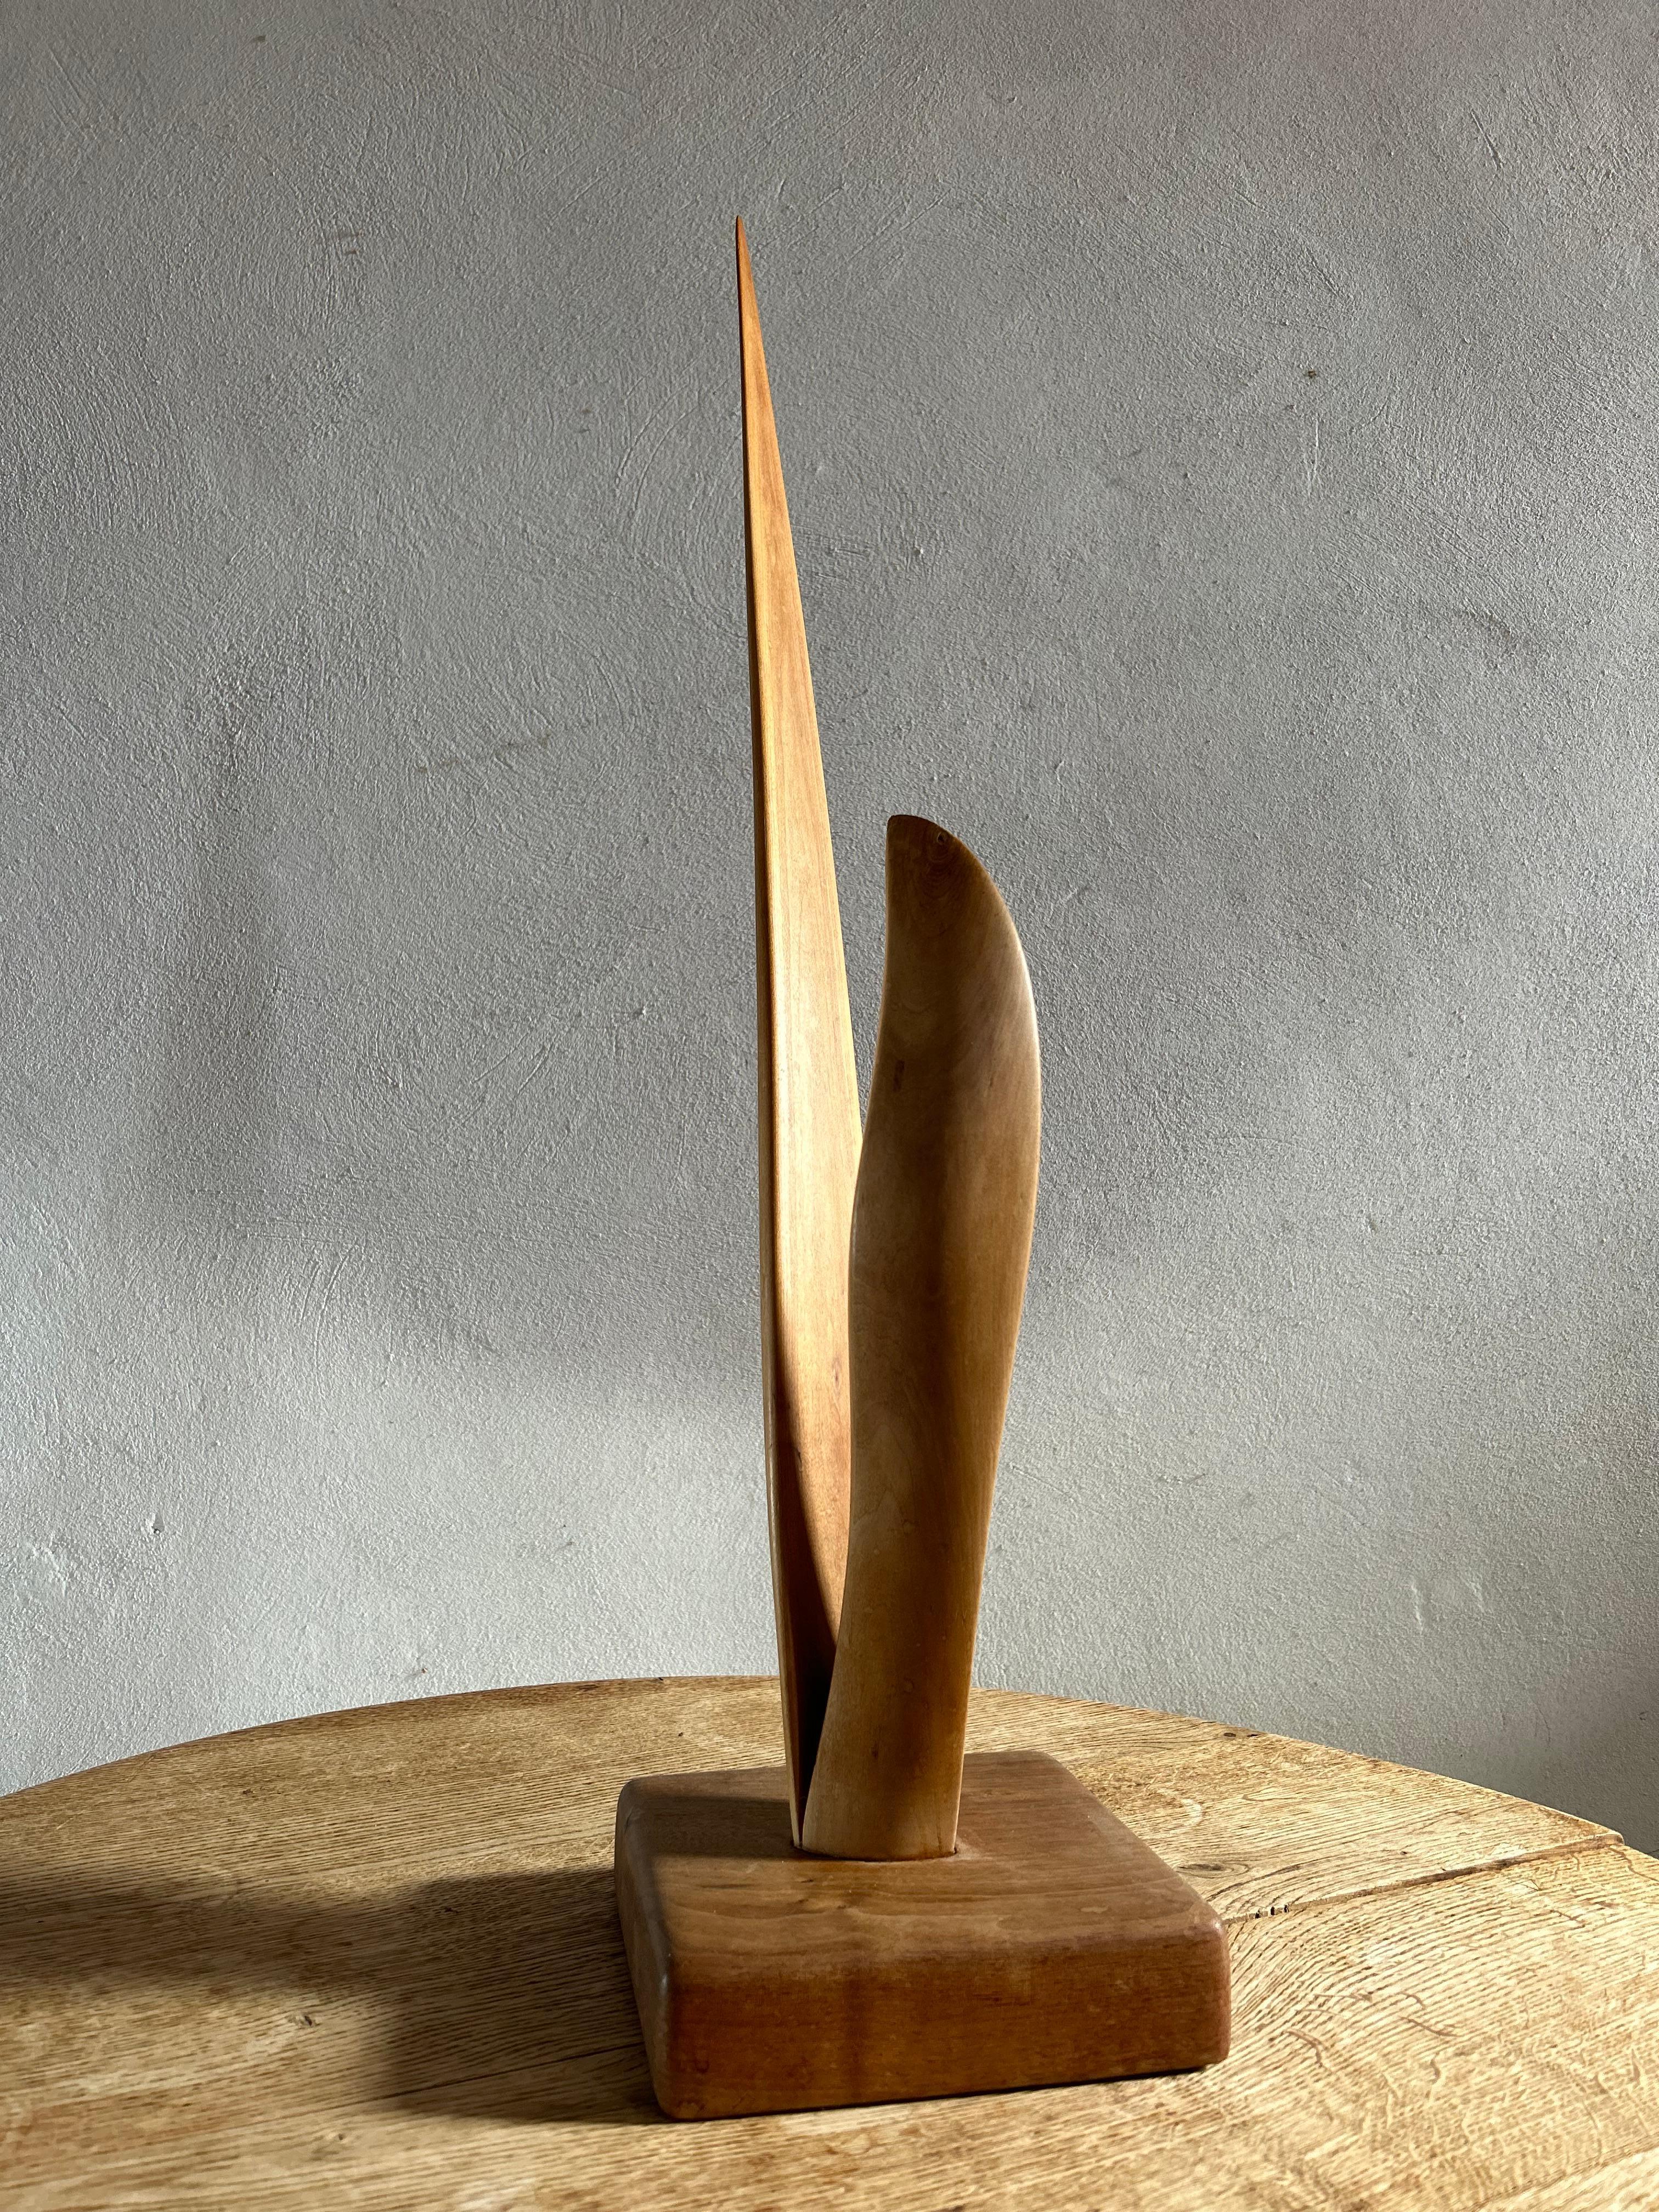 Beech Abstract Modernist Wooden Sculpture, Sweden 1977 For Sale